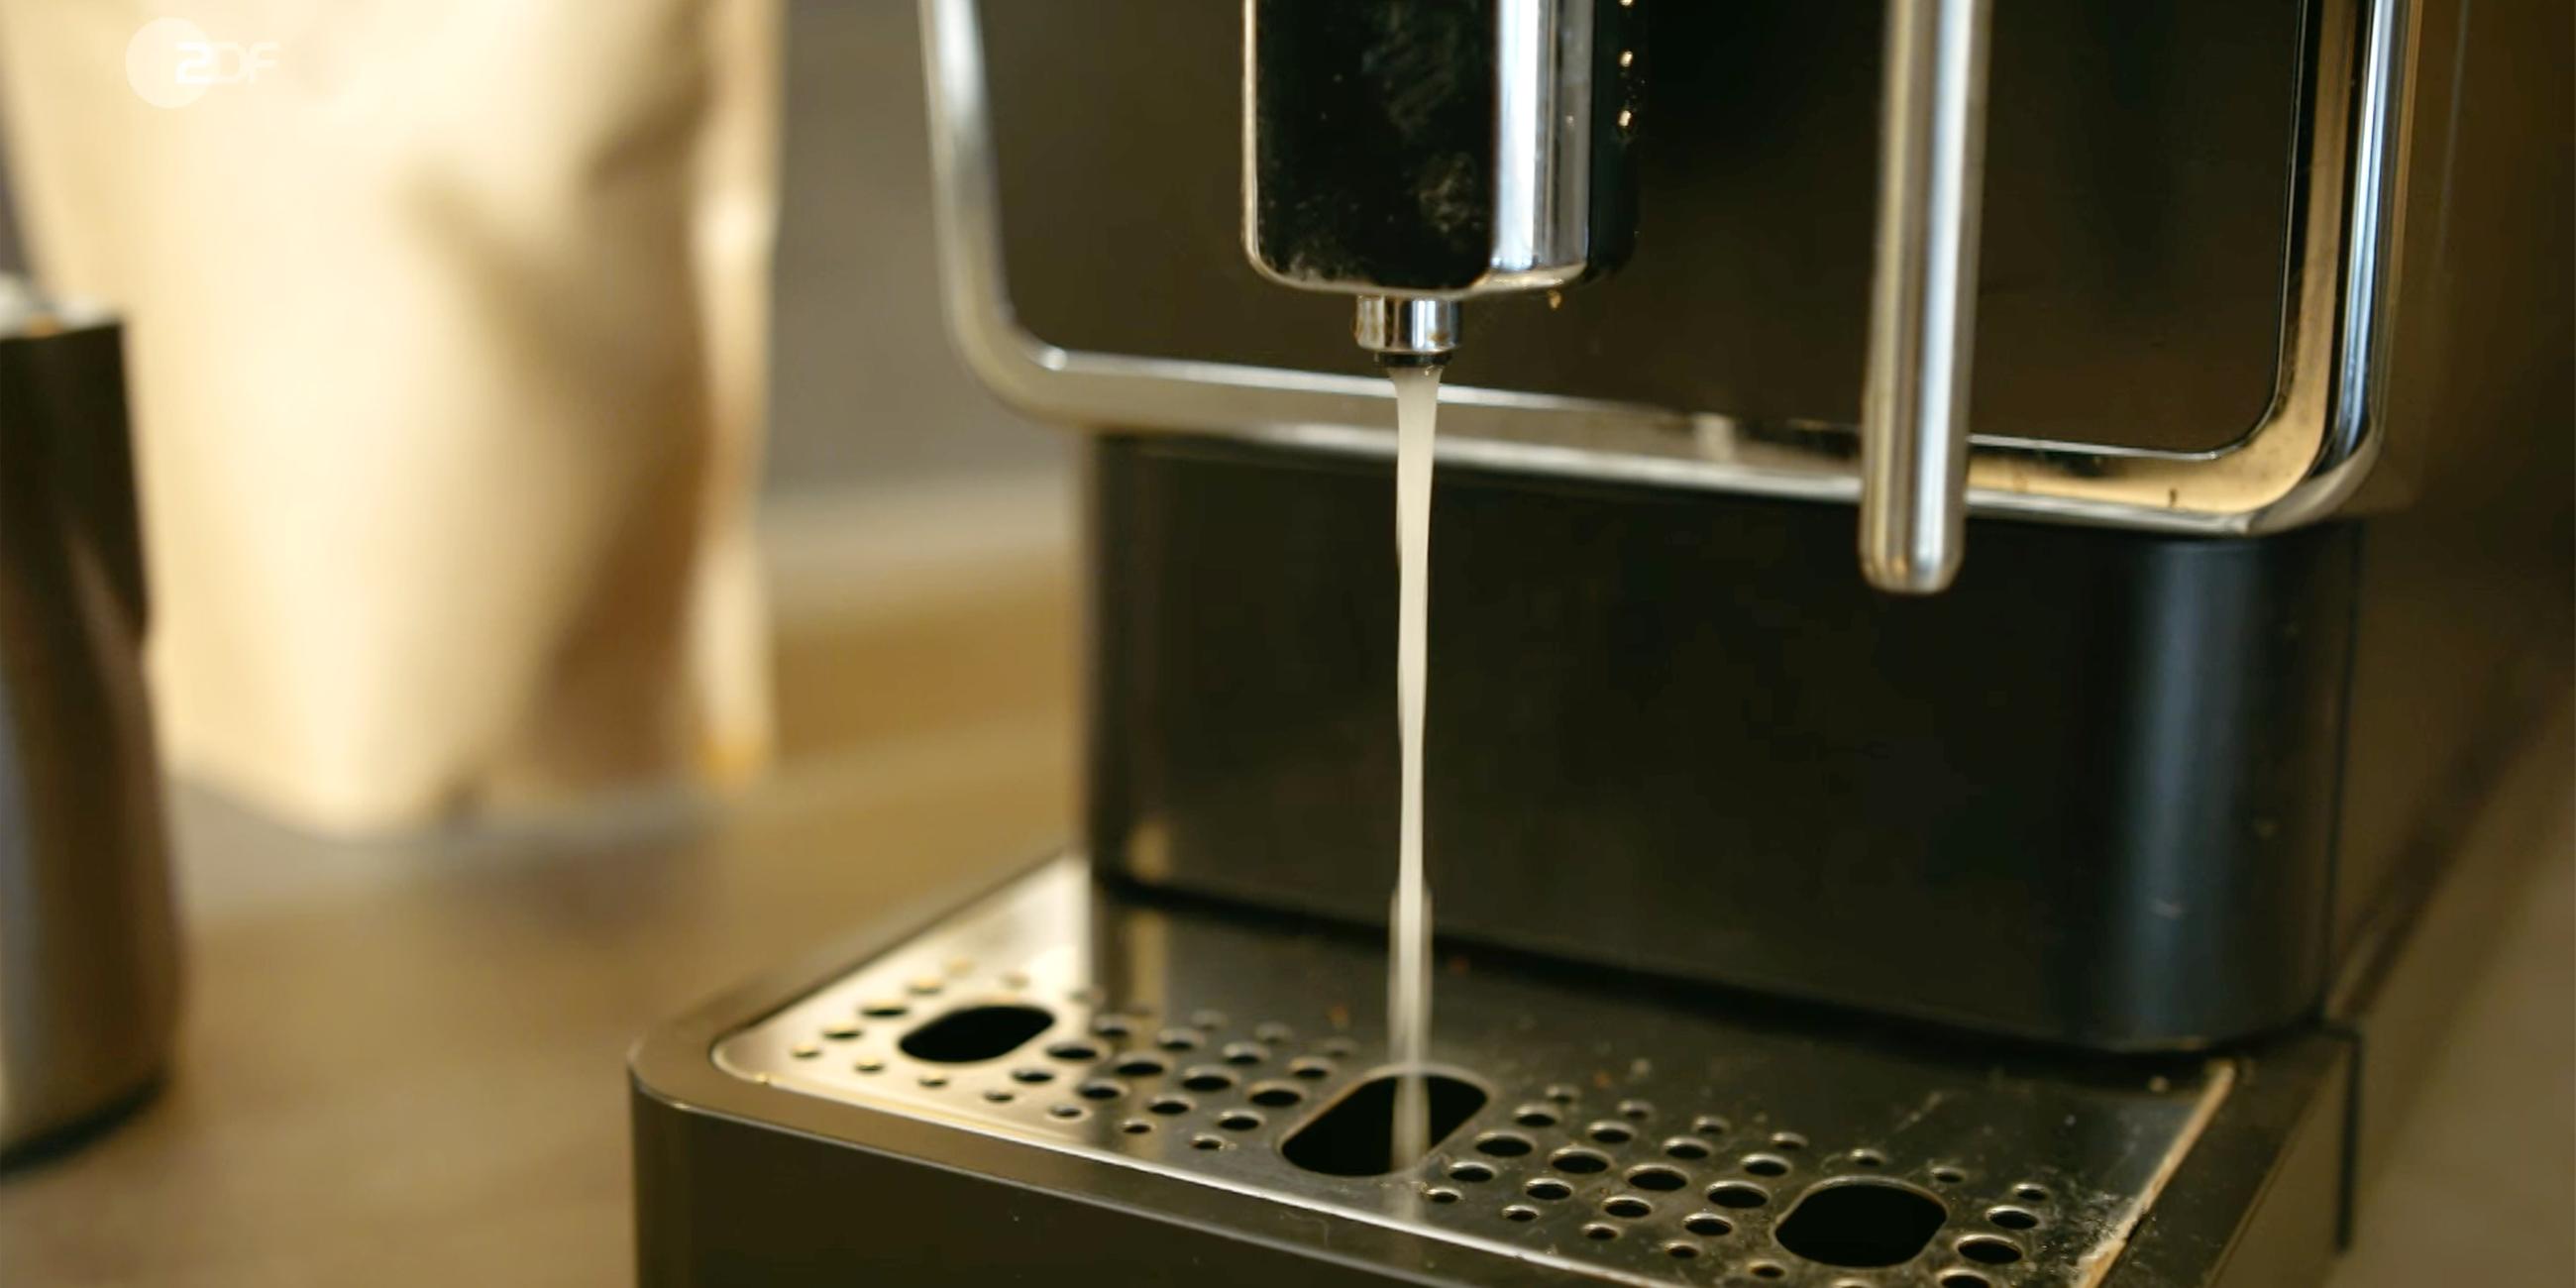 Aus einer Kaffeemaschine läudft trübes Wasser, sie reinigt sich.